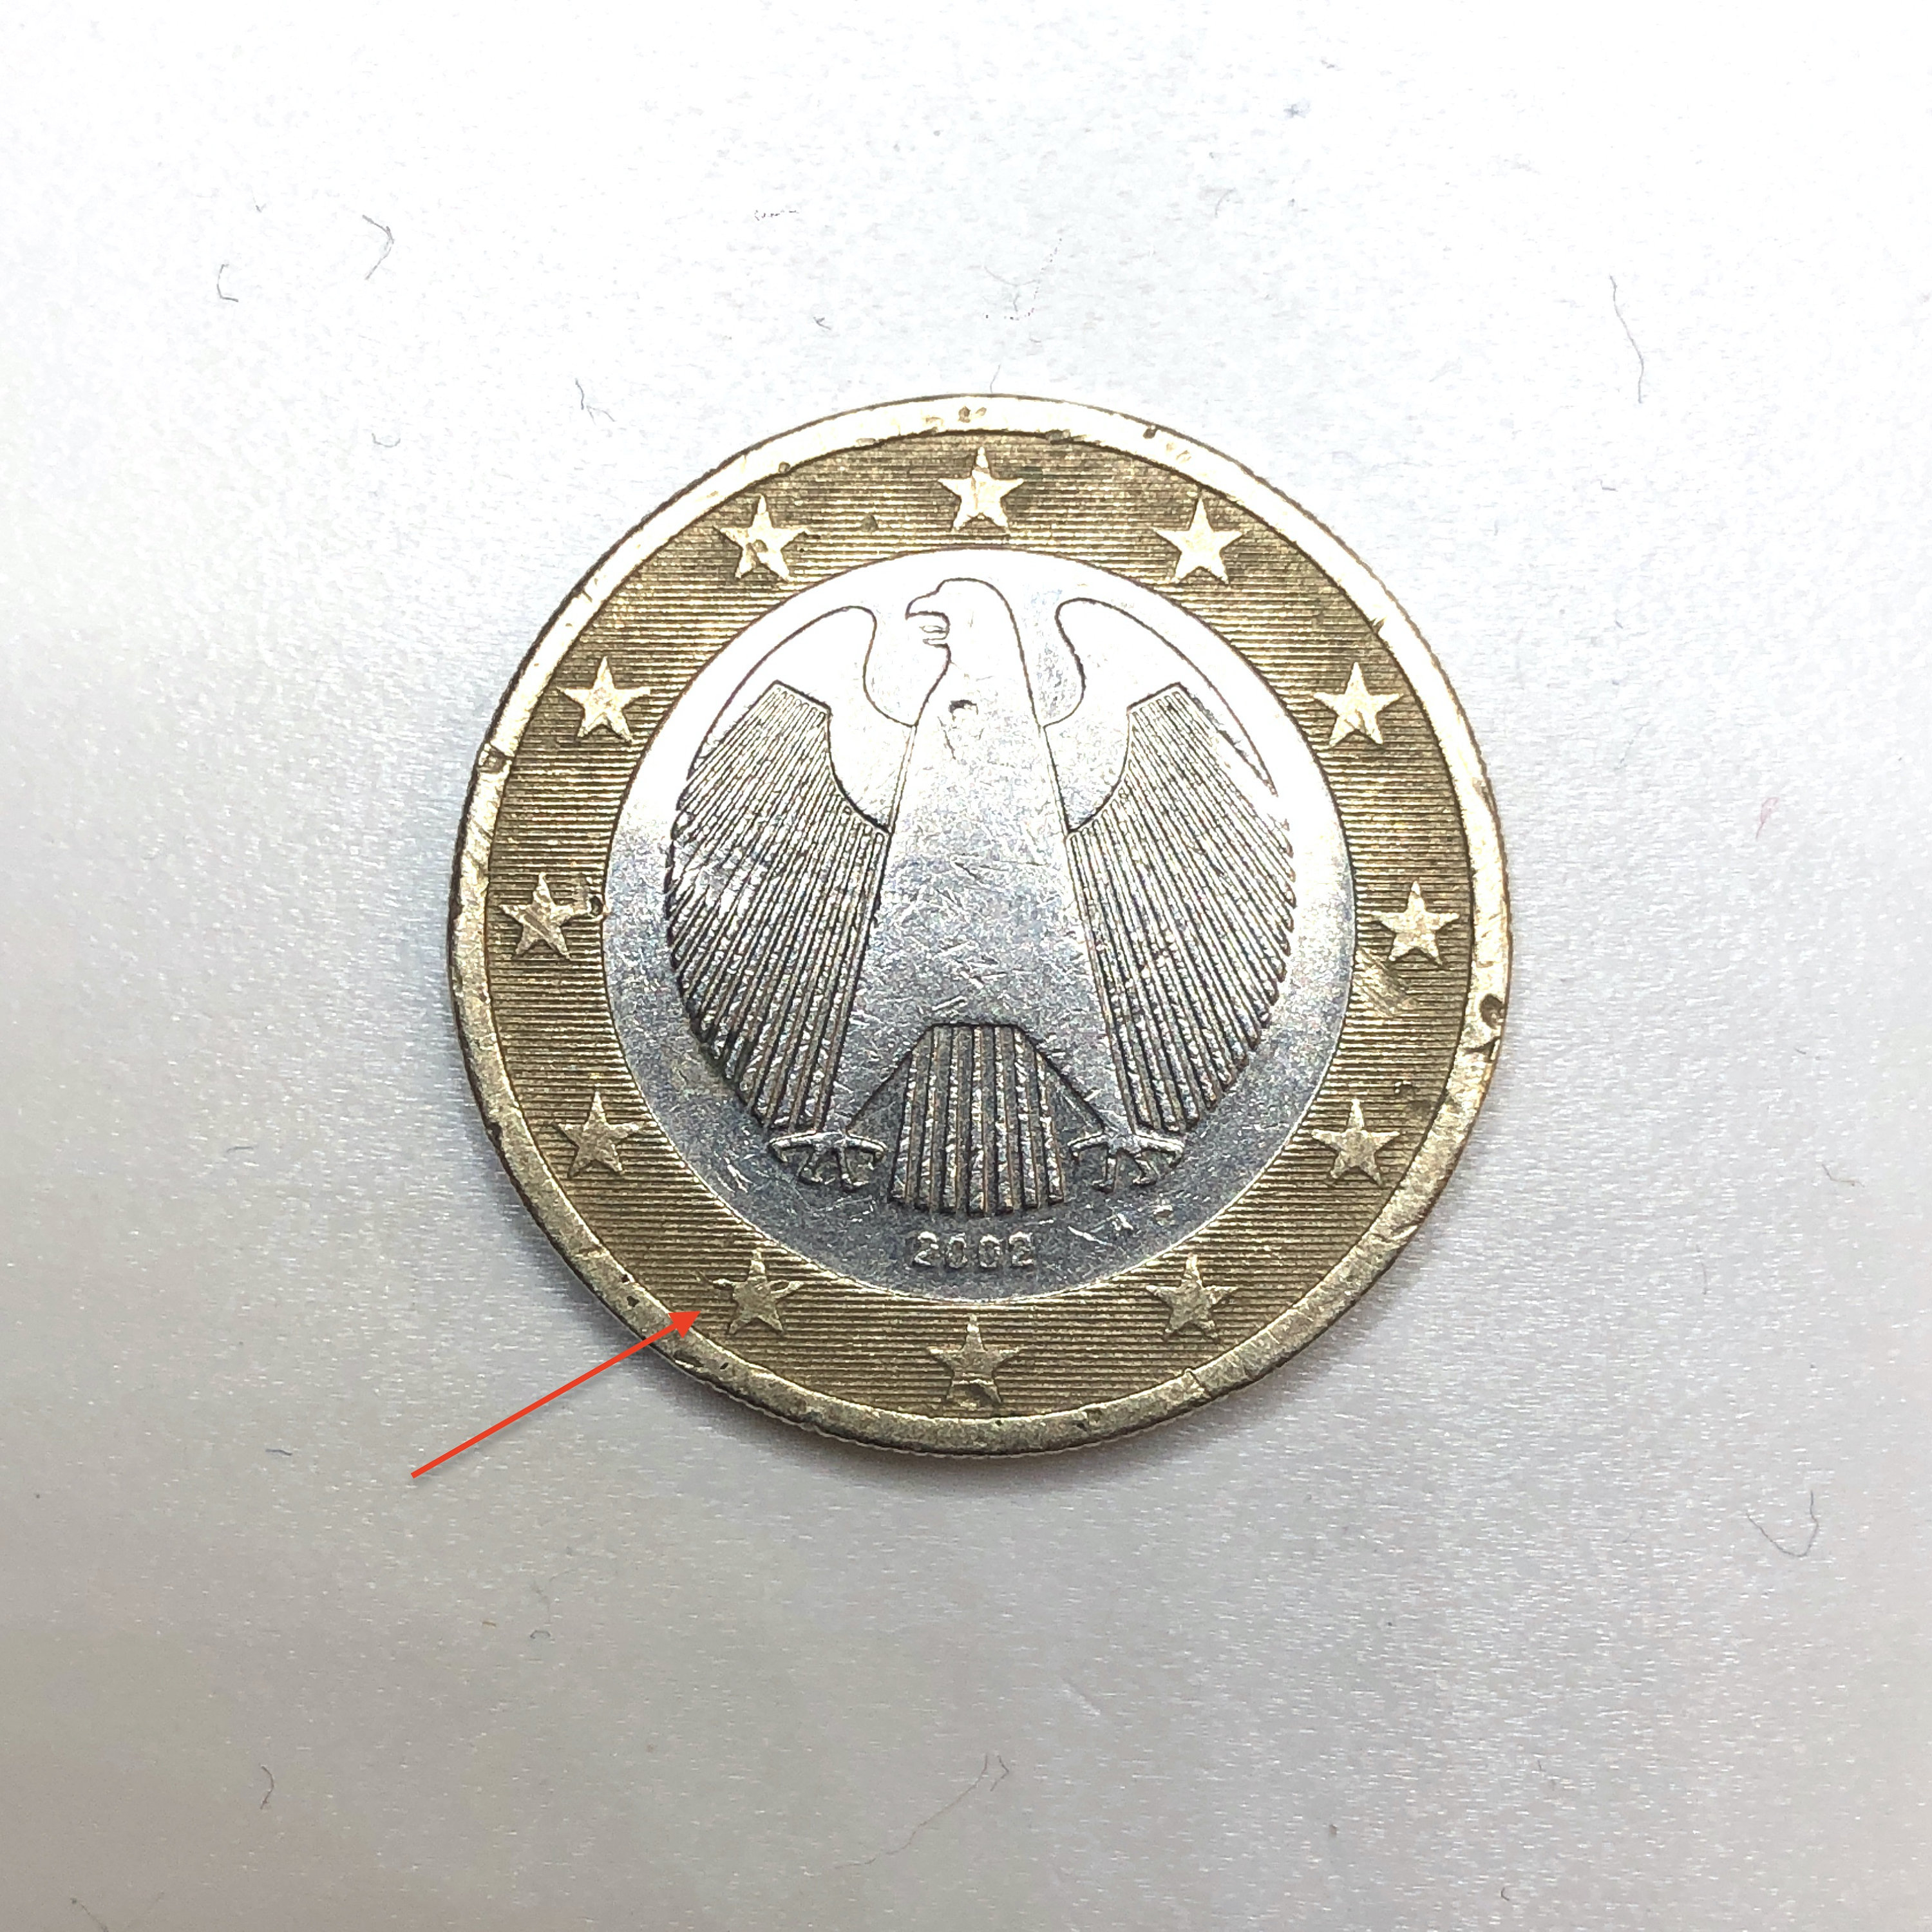 Coin 1 Euro Greece 2002 Coin 1 Euro Greece 2002 with Defect Rare off Center  Mint Made Error 